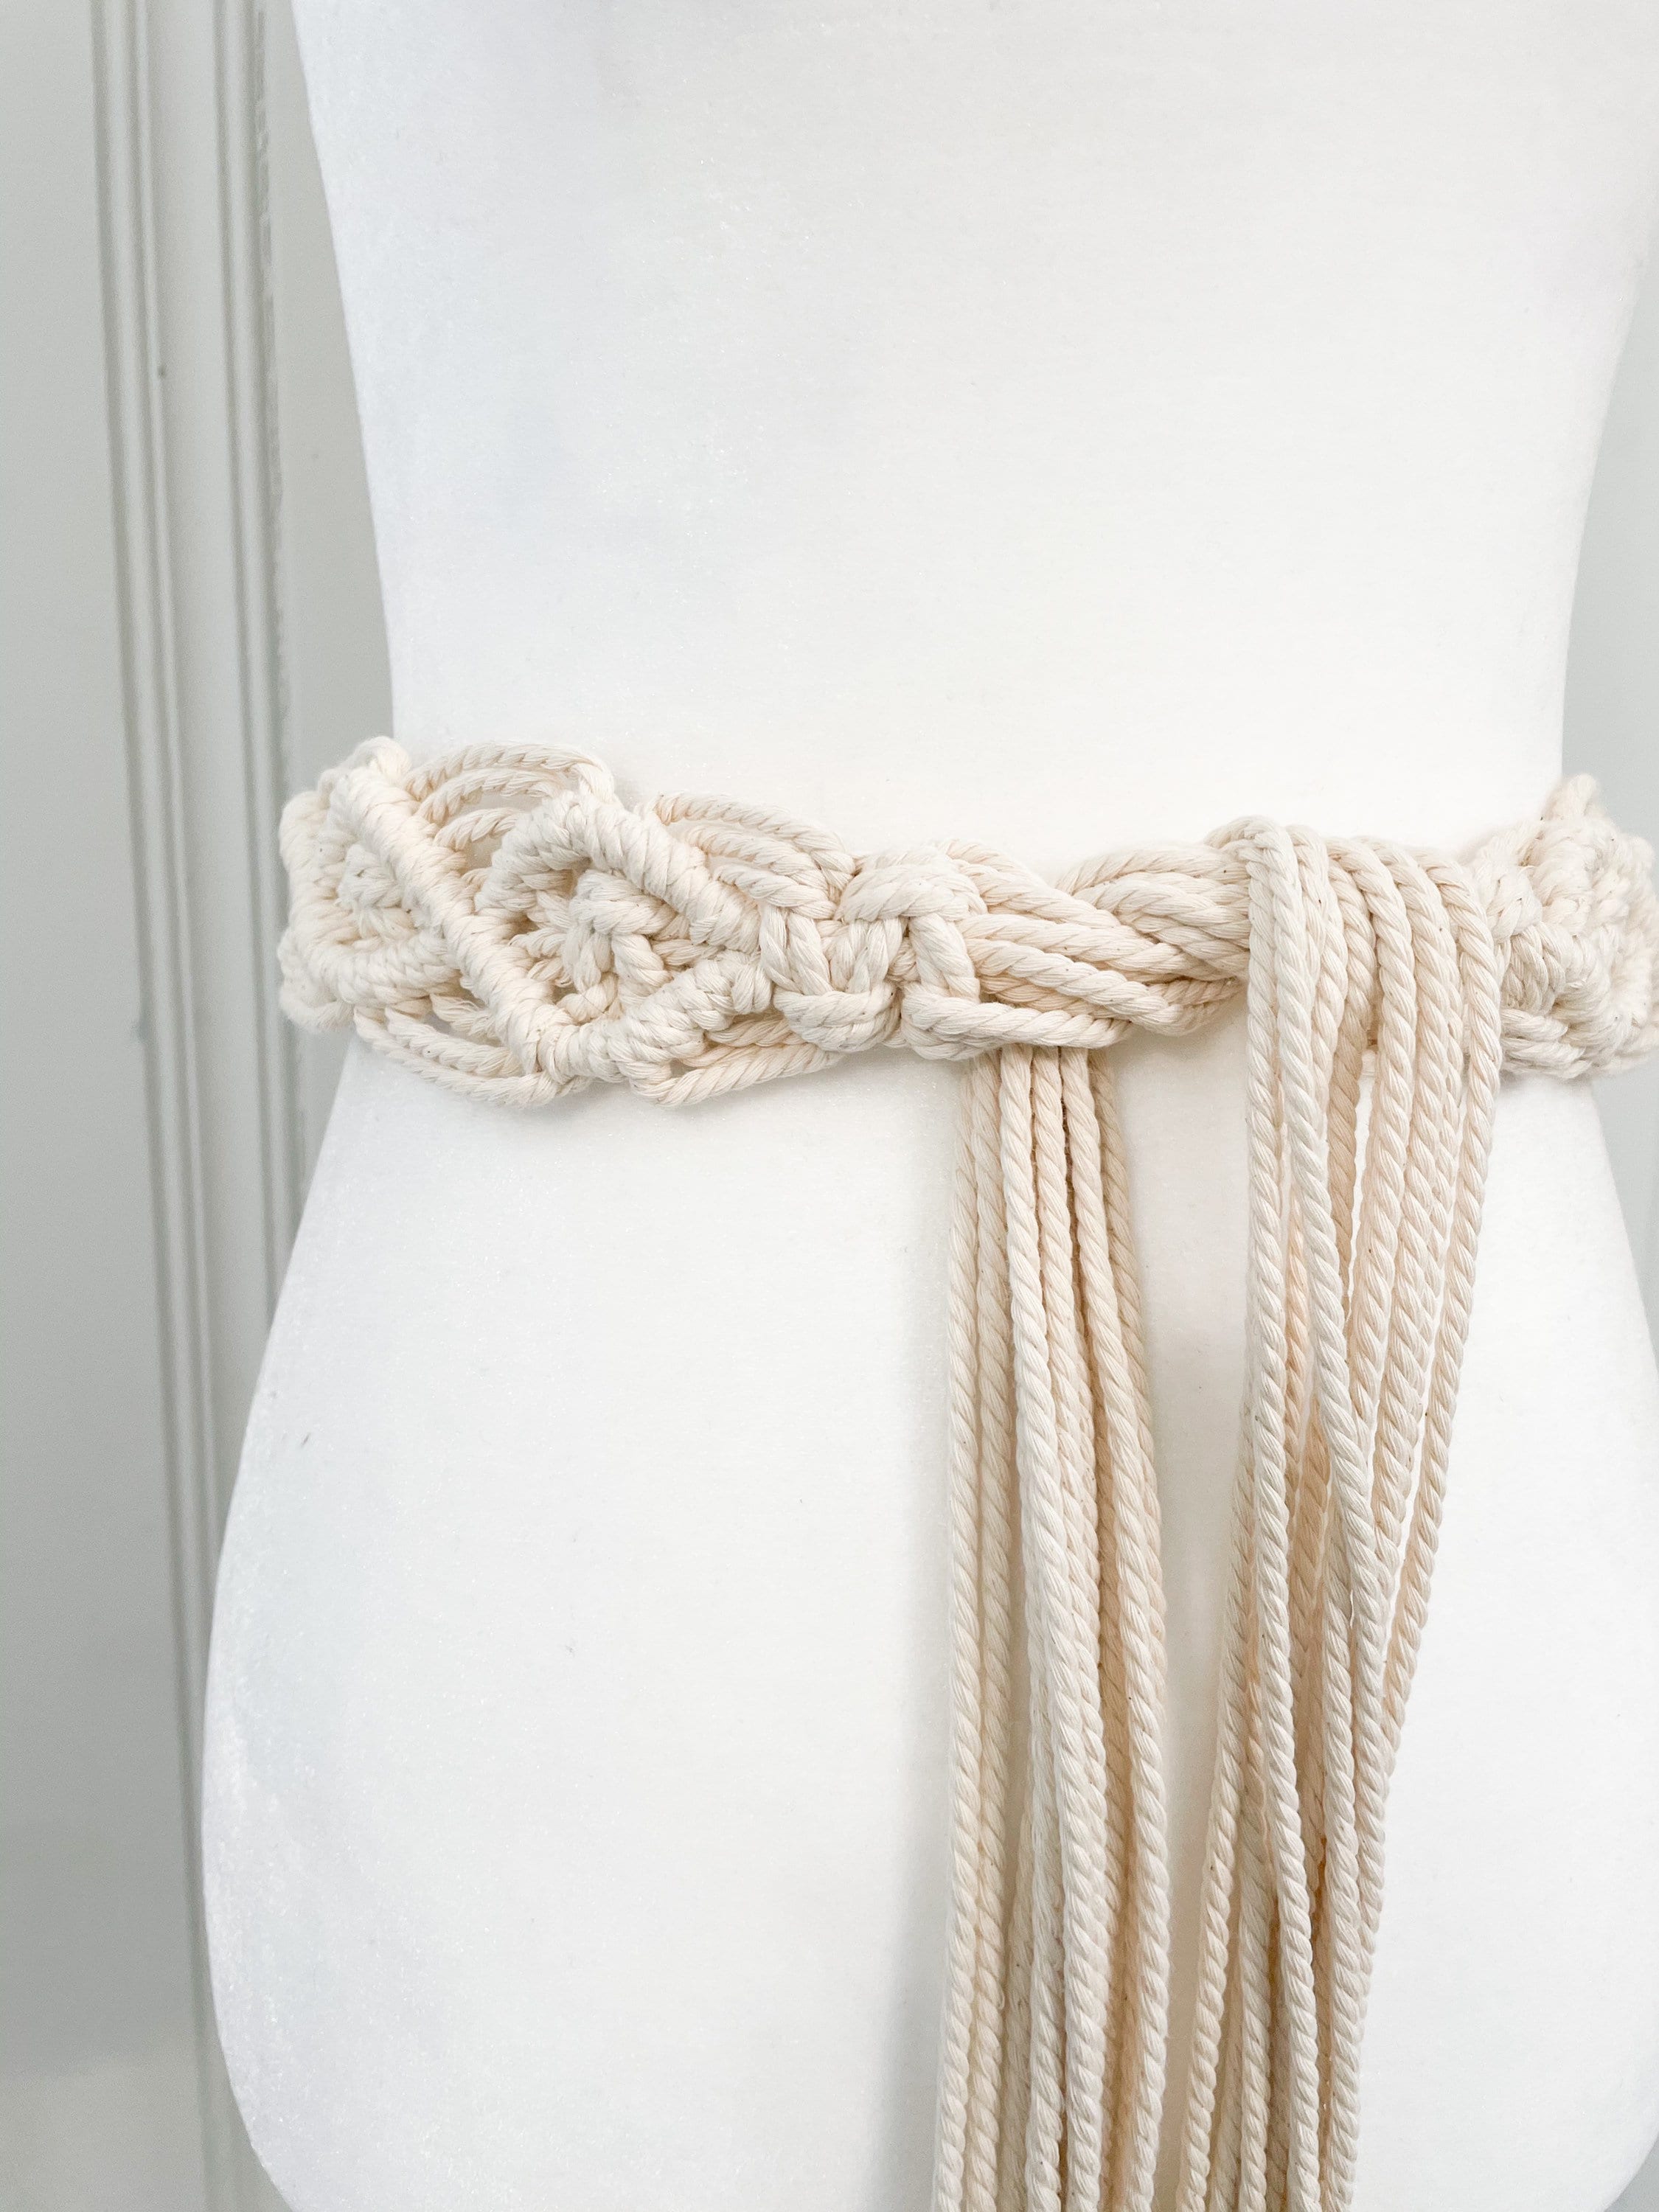 ROSA BELT One-size Boho Handmade Macrame Belt | Etsy